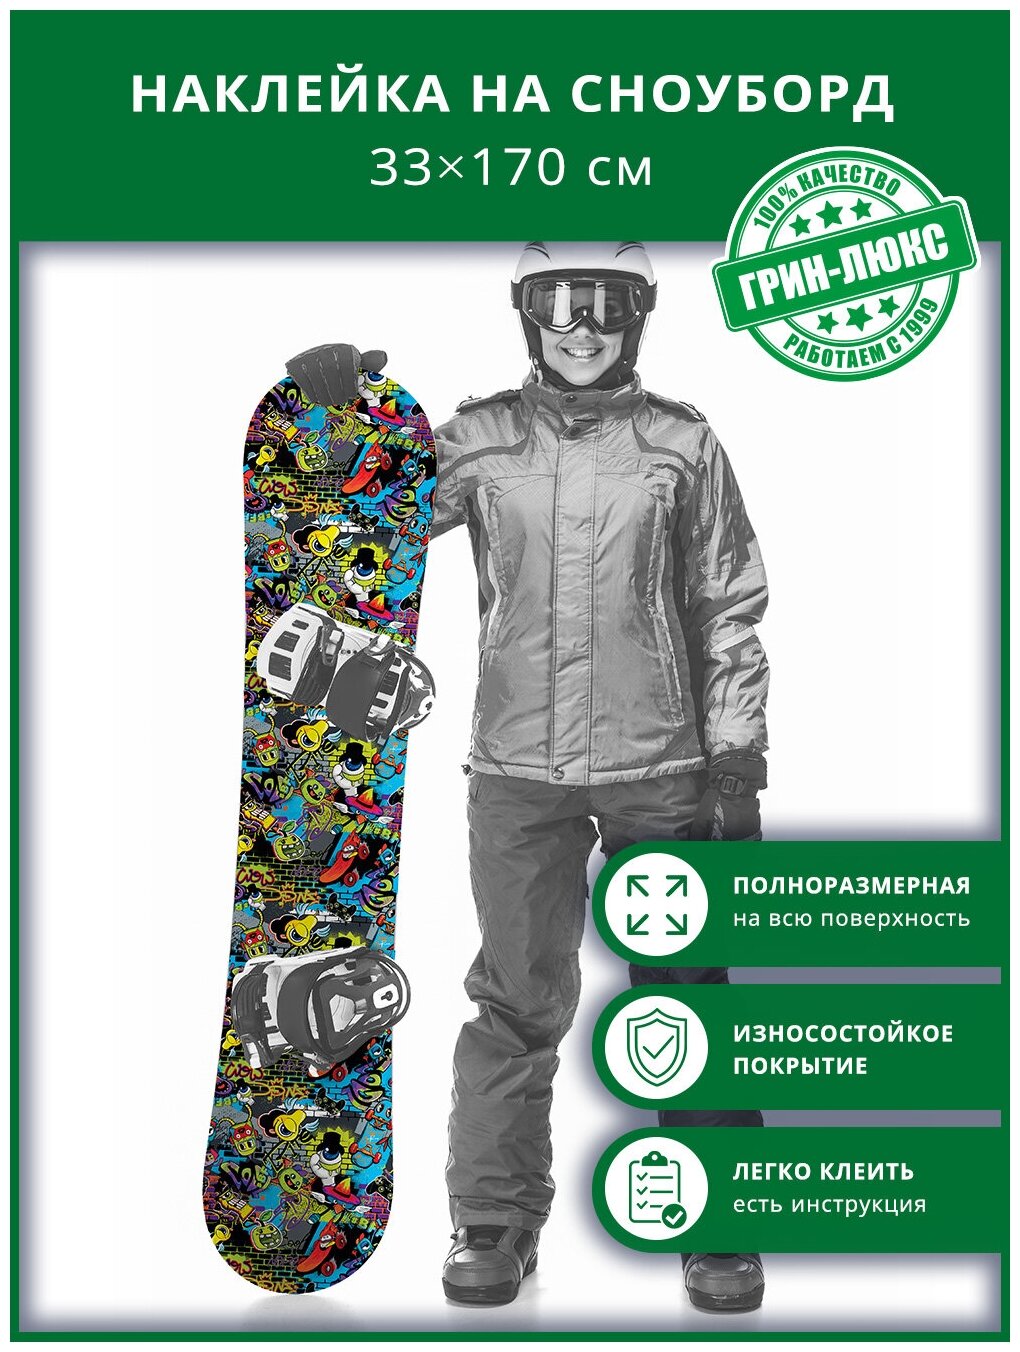 Наклейка на сноуборд с защитным глянцевым покрытием 33х170 см "Весёлые монстры"